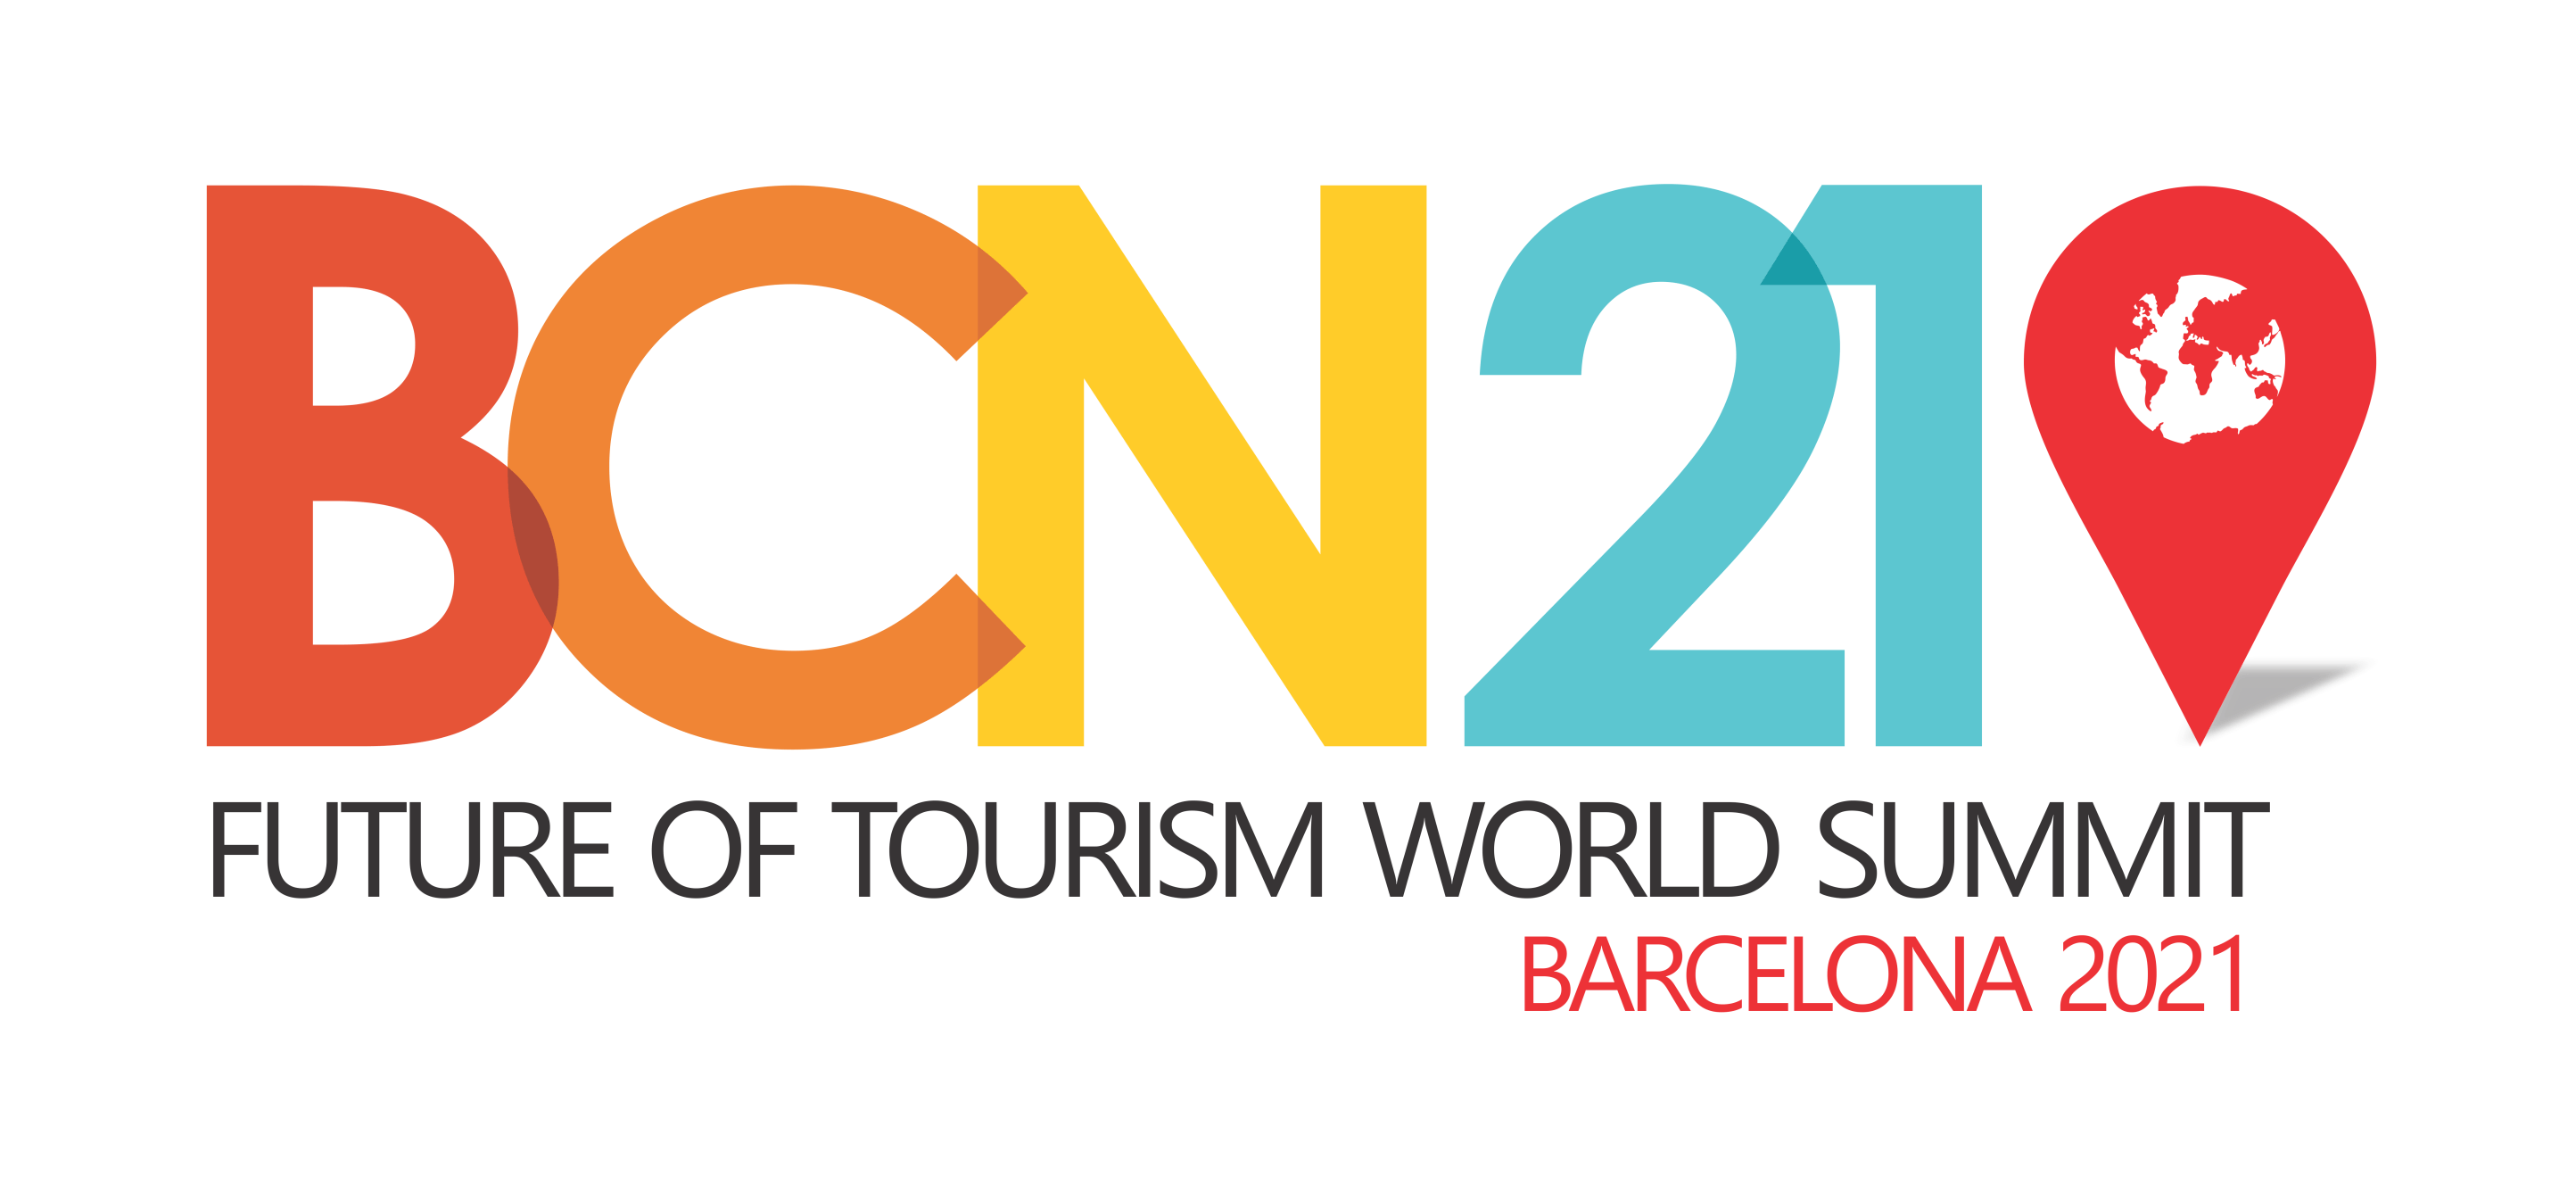 La Présidente d’ISTO intervient lors du Future of Tourism World Summit Barcelona 2021